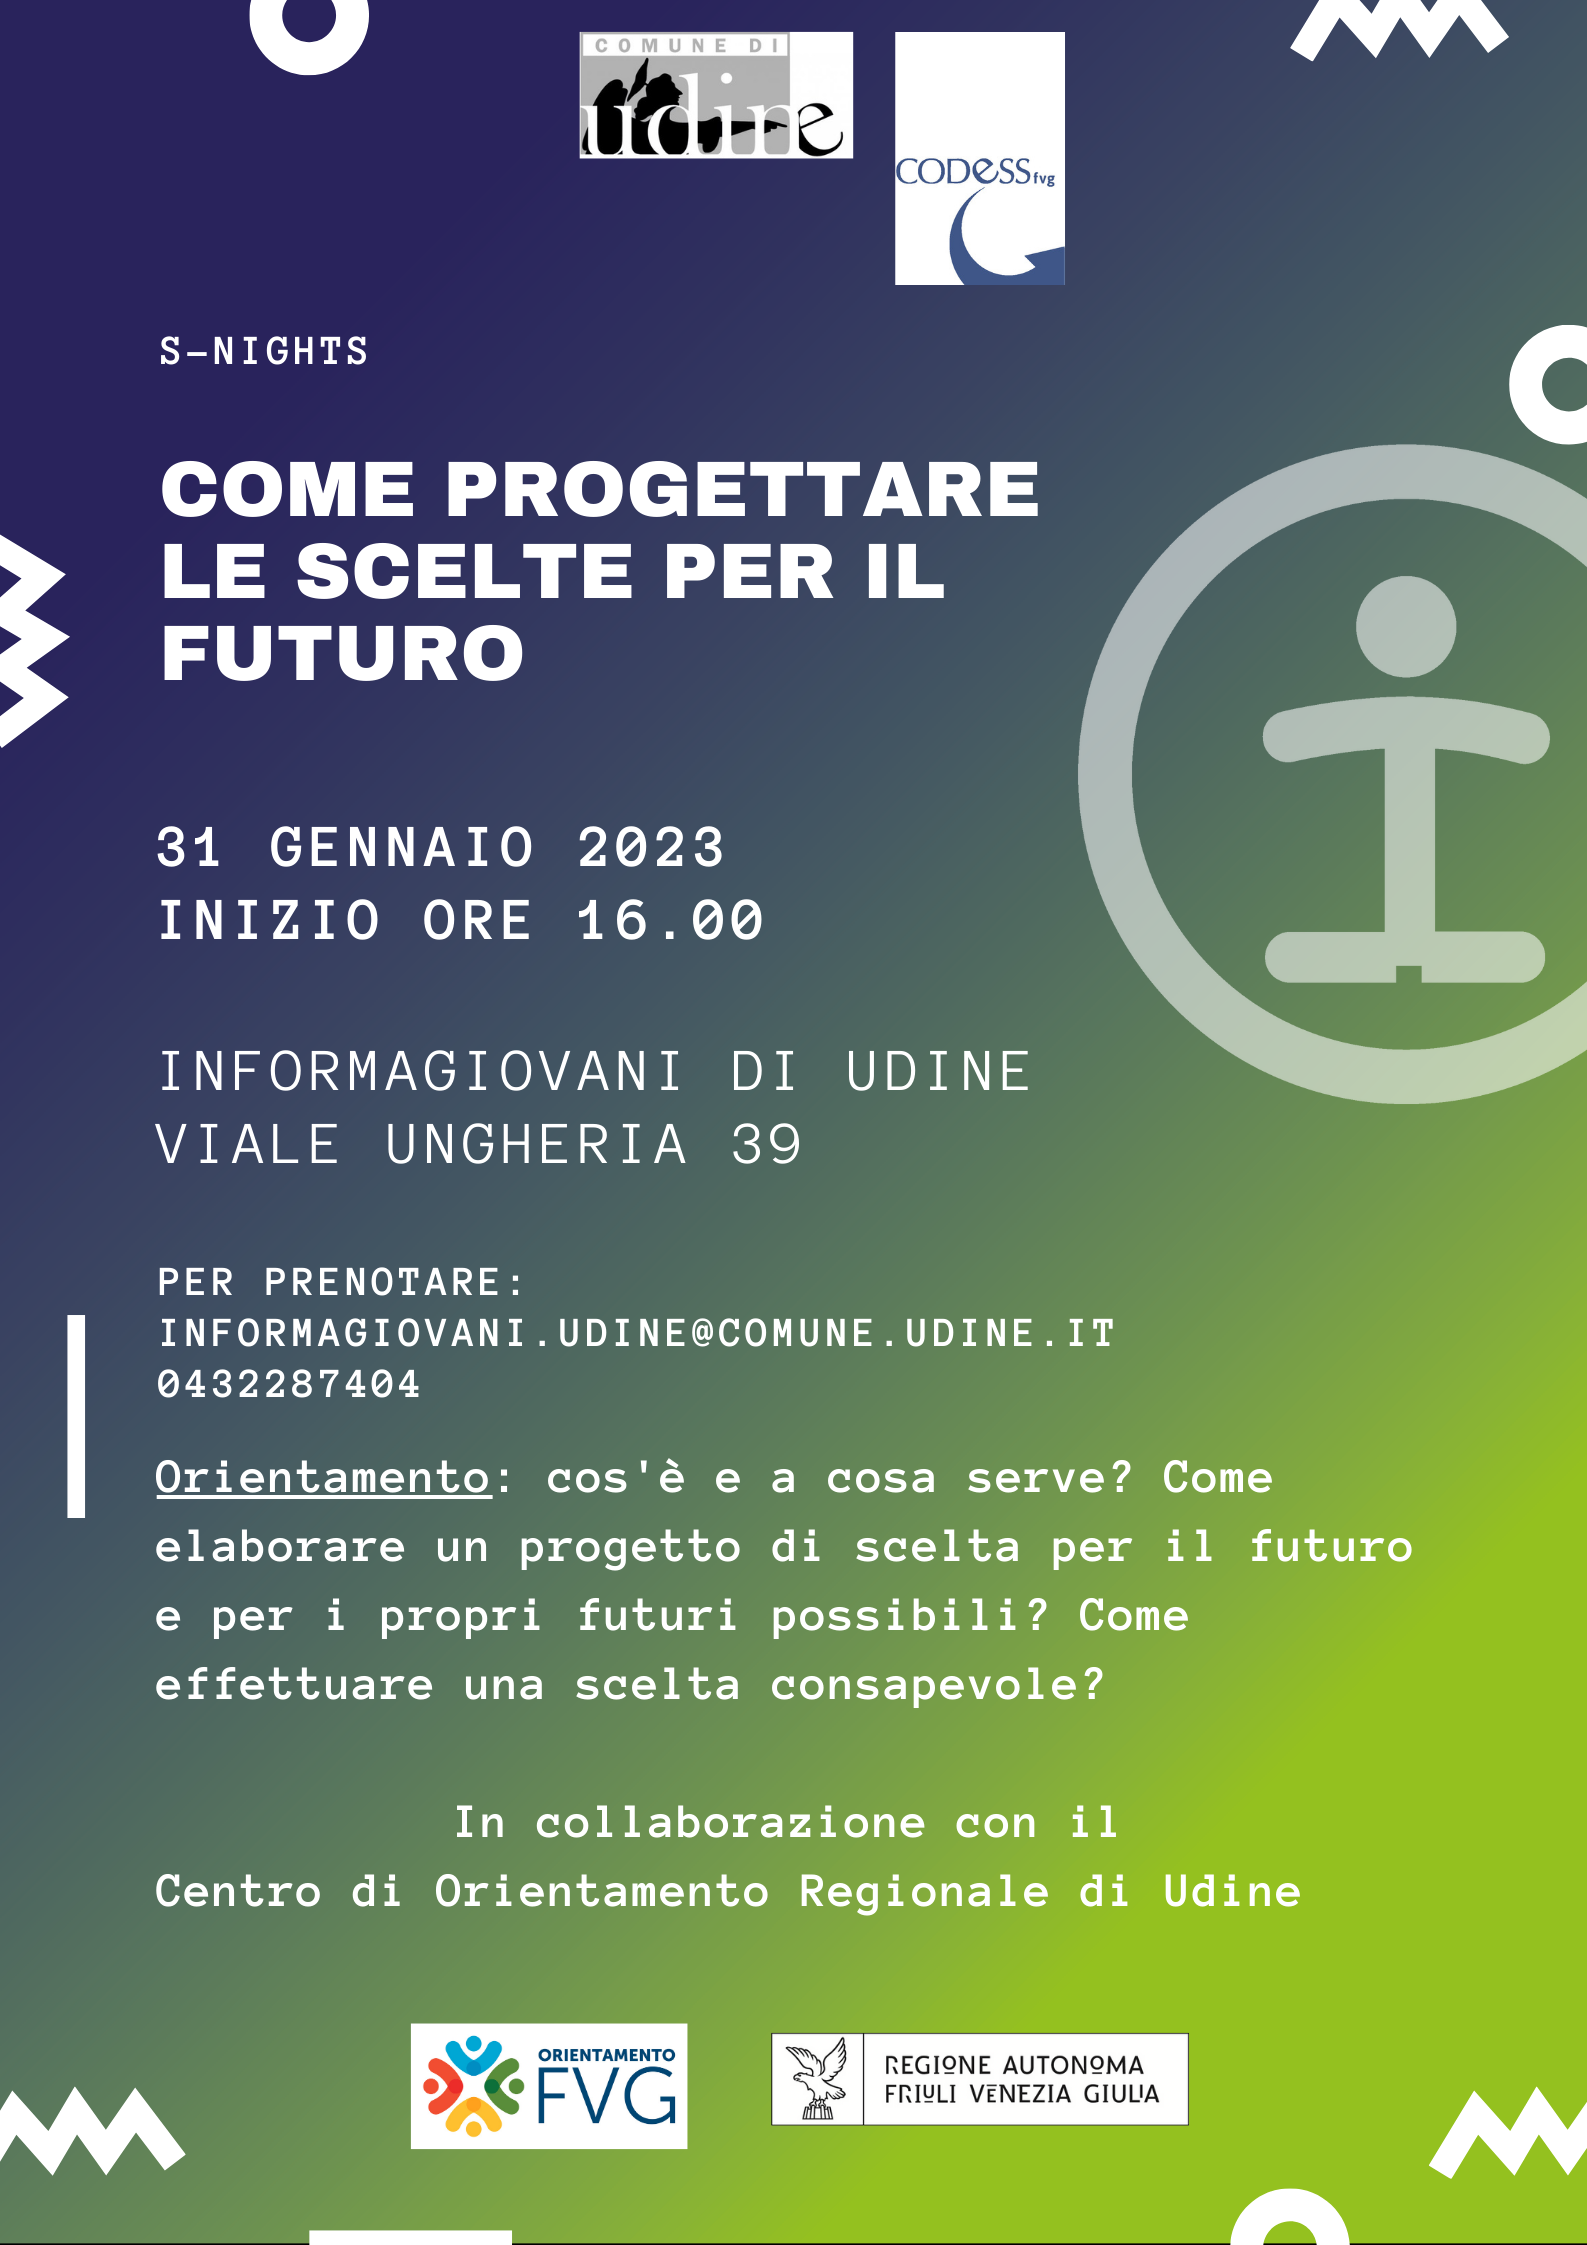 COME PROGETTARE LE SCELTE PER IL FUTURO - InformaGiovani di Udine